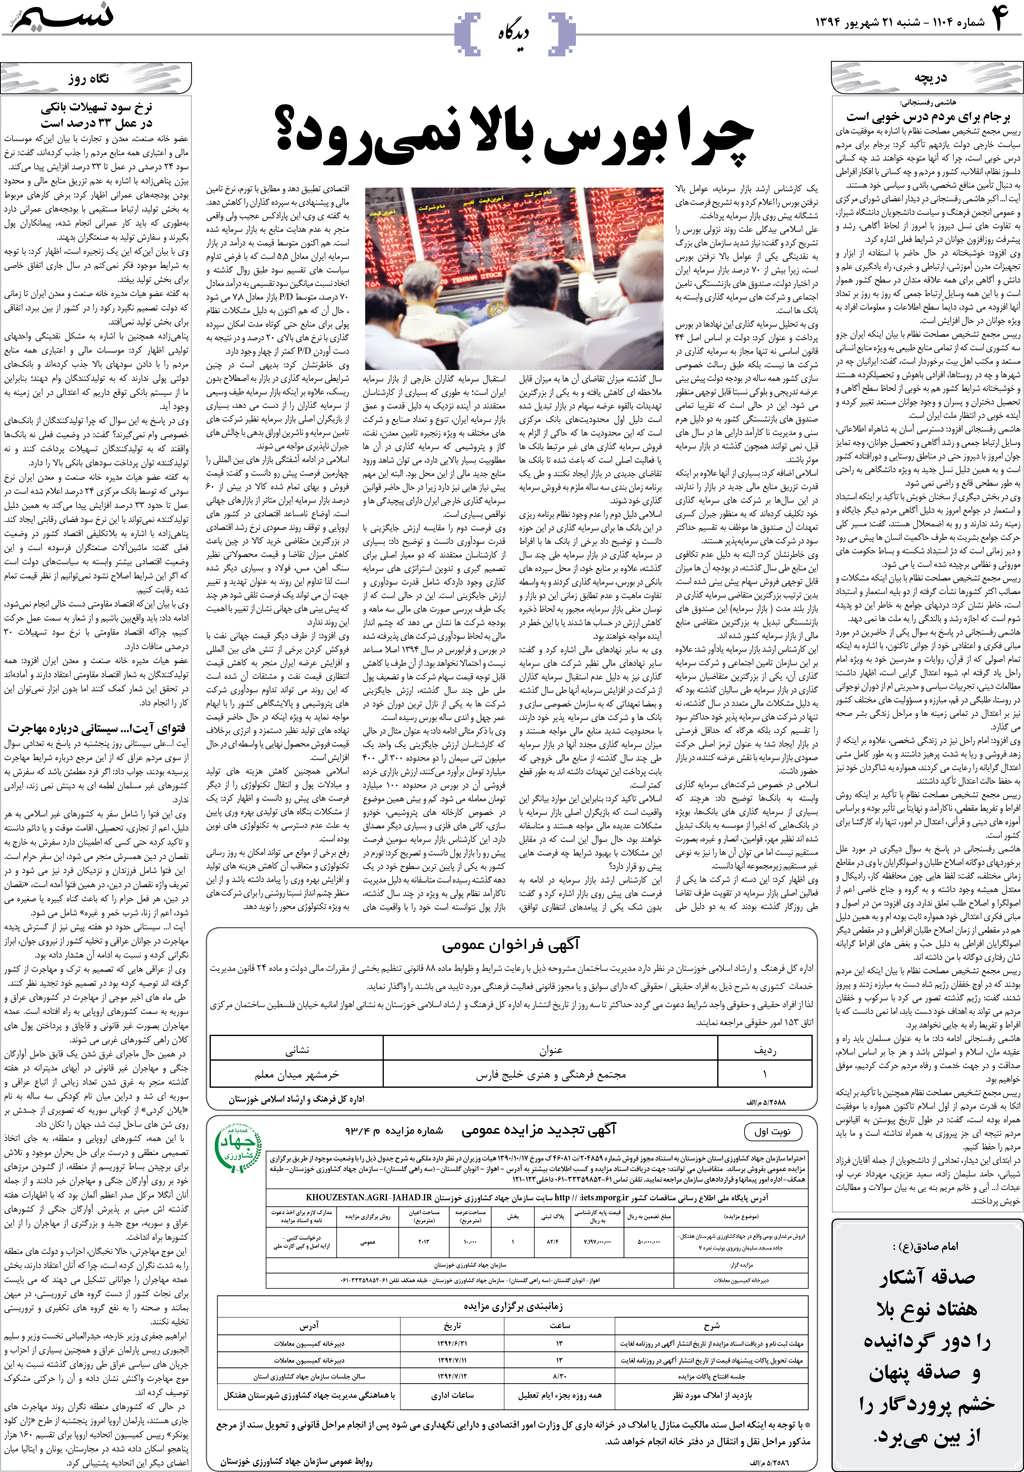 صفحه دیدگاه روزنامه نسیم شماره 1104